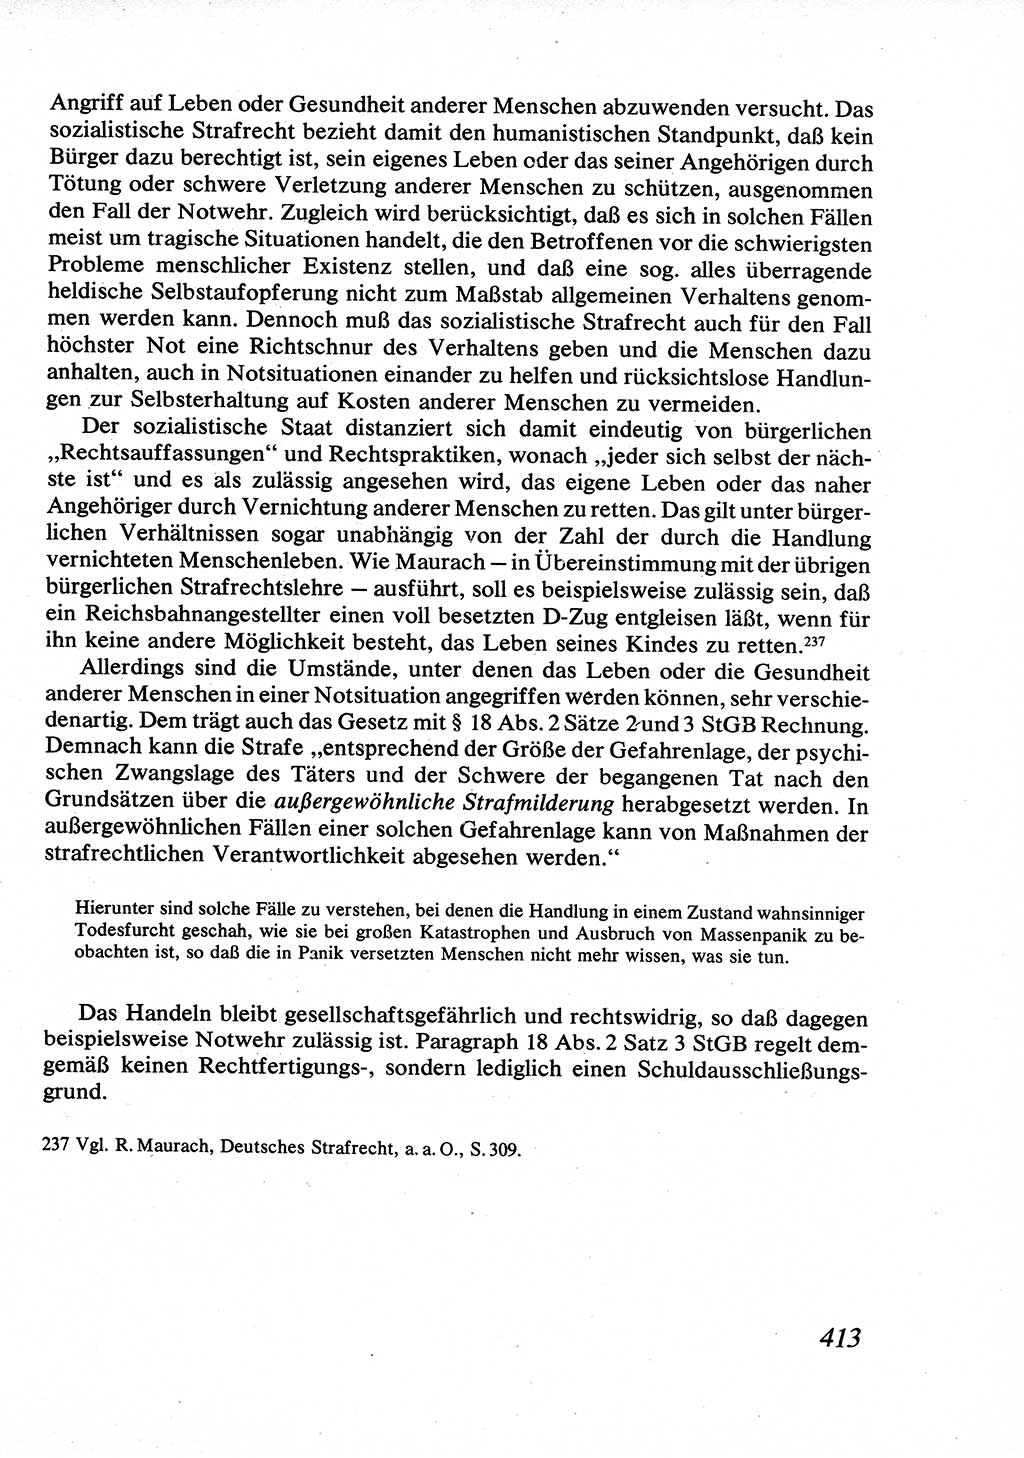 Strafrecht [Deutsche Demokratische Republik (DDR)], Allgemeiner Teil, Lehrbuch 1976, Seite 413 (Strafr. DDR AT Lb. 1976, S. 413)